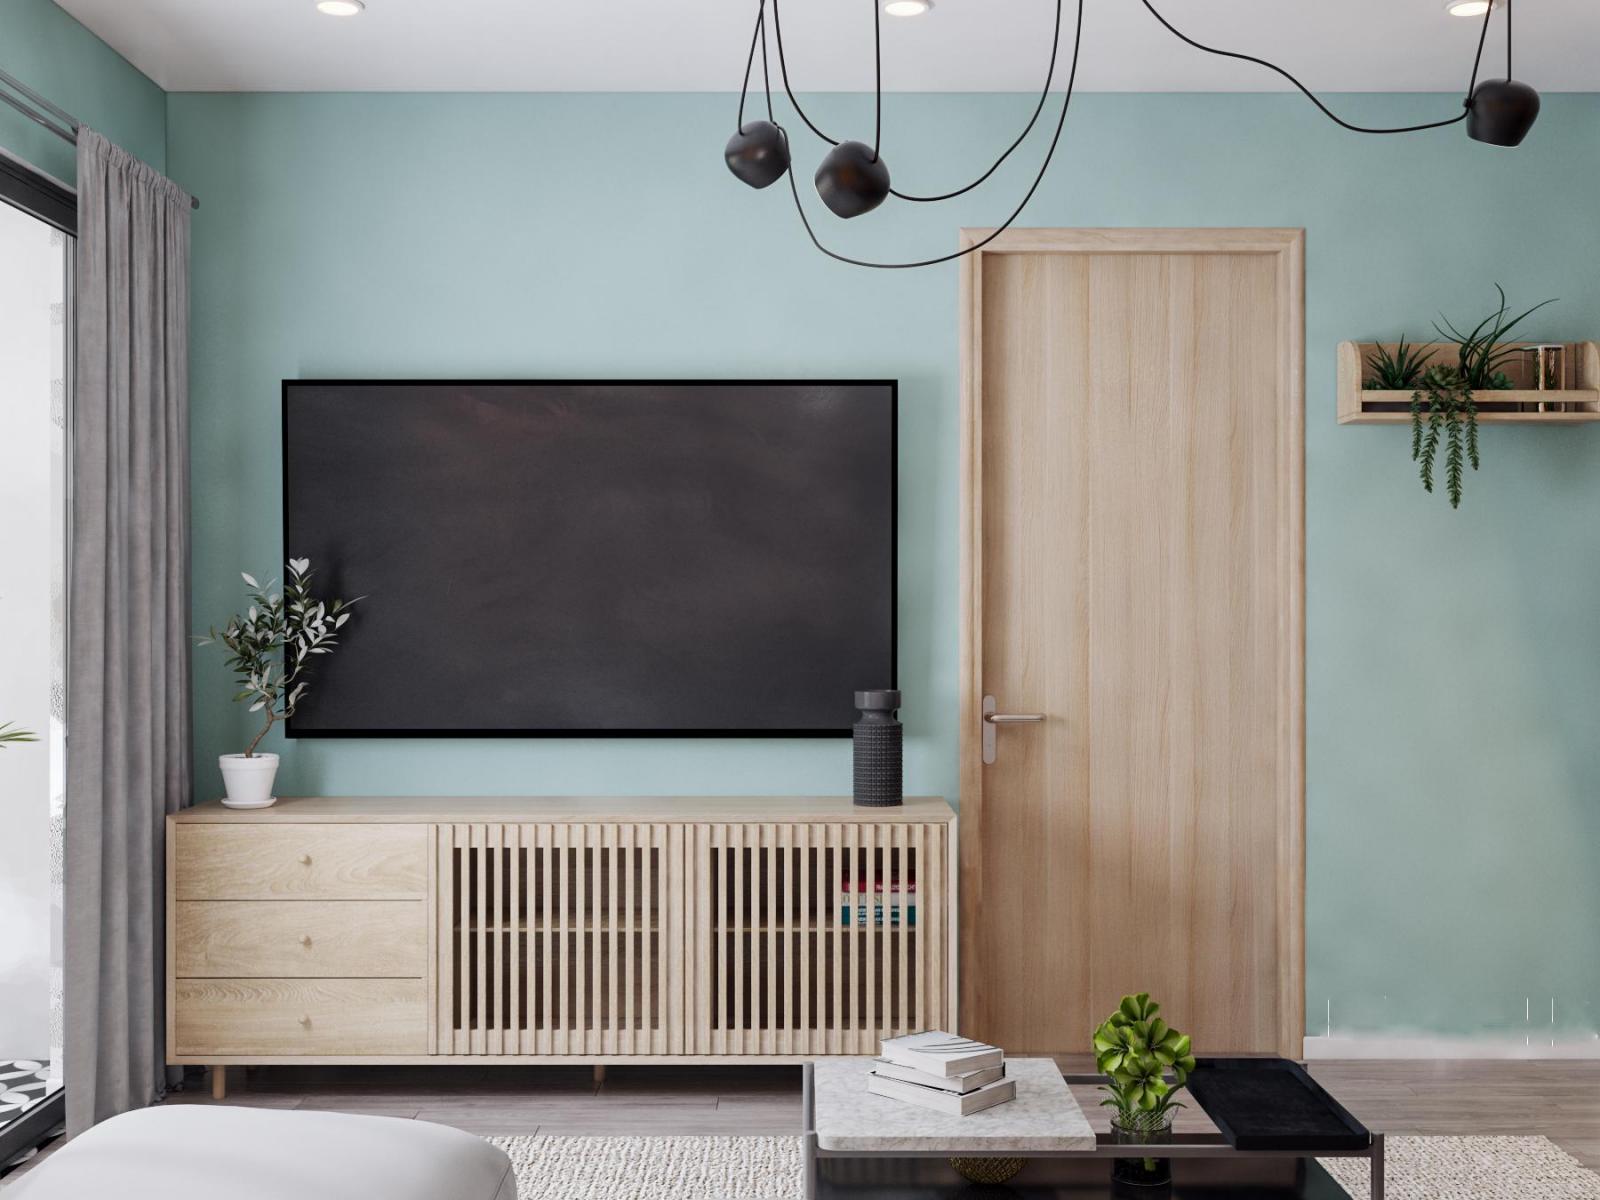 Góc phòng khách căn hộ 90m2 với tường màu xanh pastel nhã nhặn, làm nền cho nội thất gỗ màu sáng trở nên nổi bật hơn.